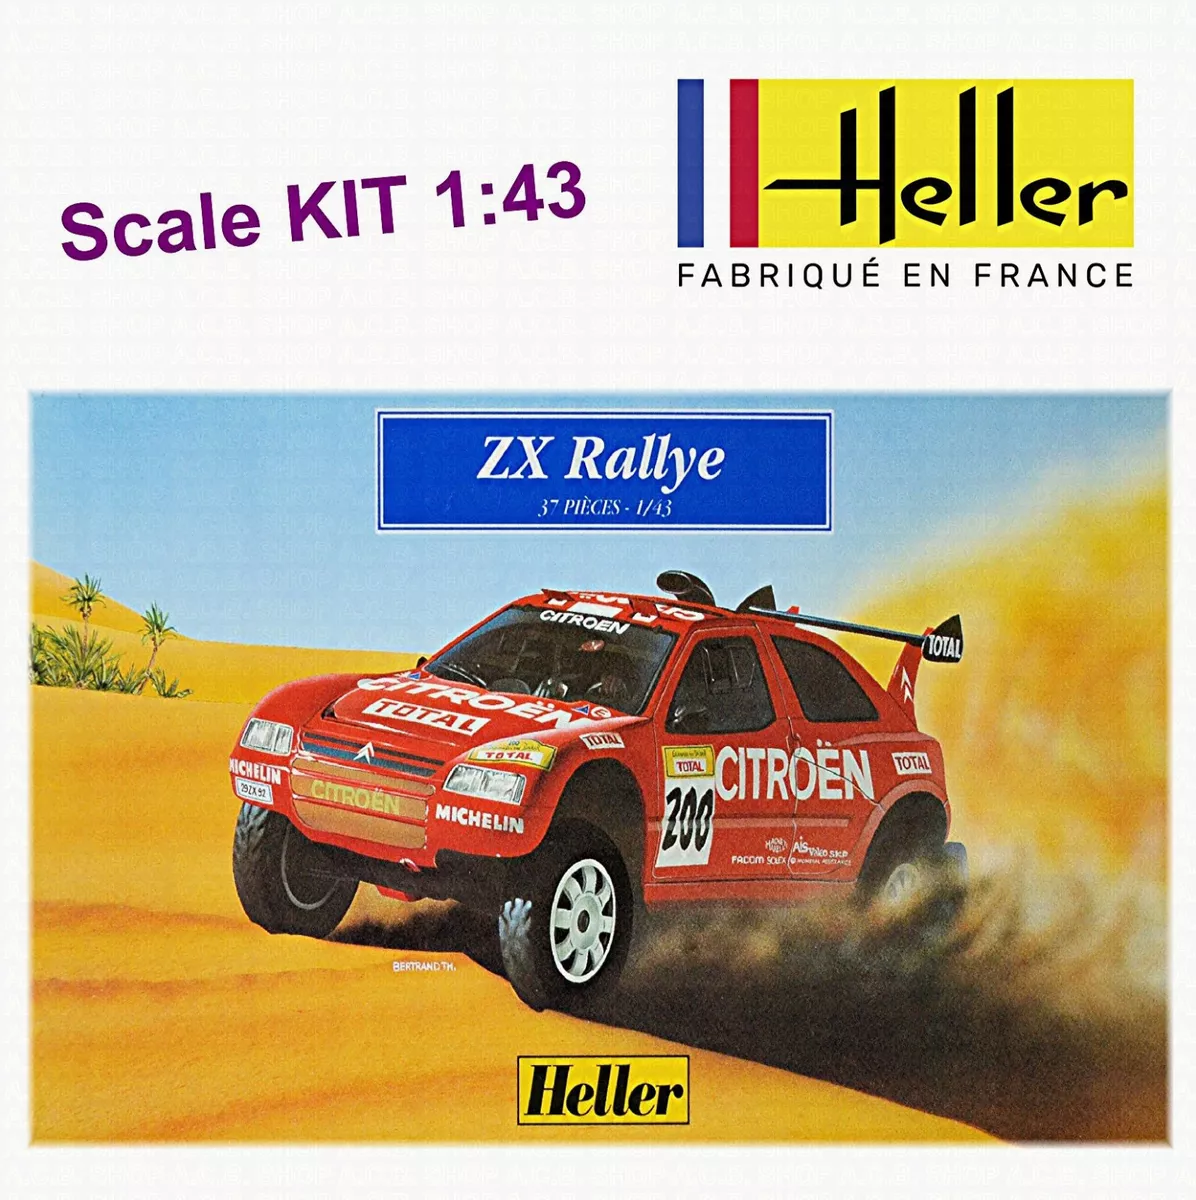 Citroen Zx Rallye Raid #200 Winner Dakar 1995 P.Latique 1:43 Heller Kit